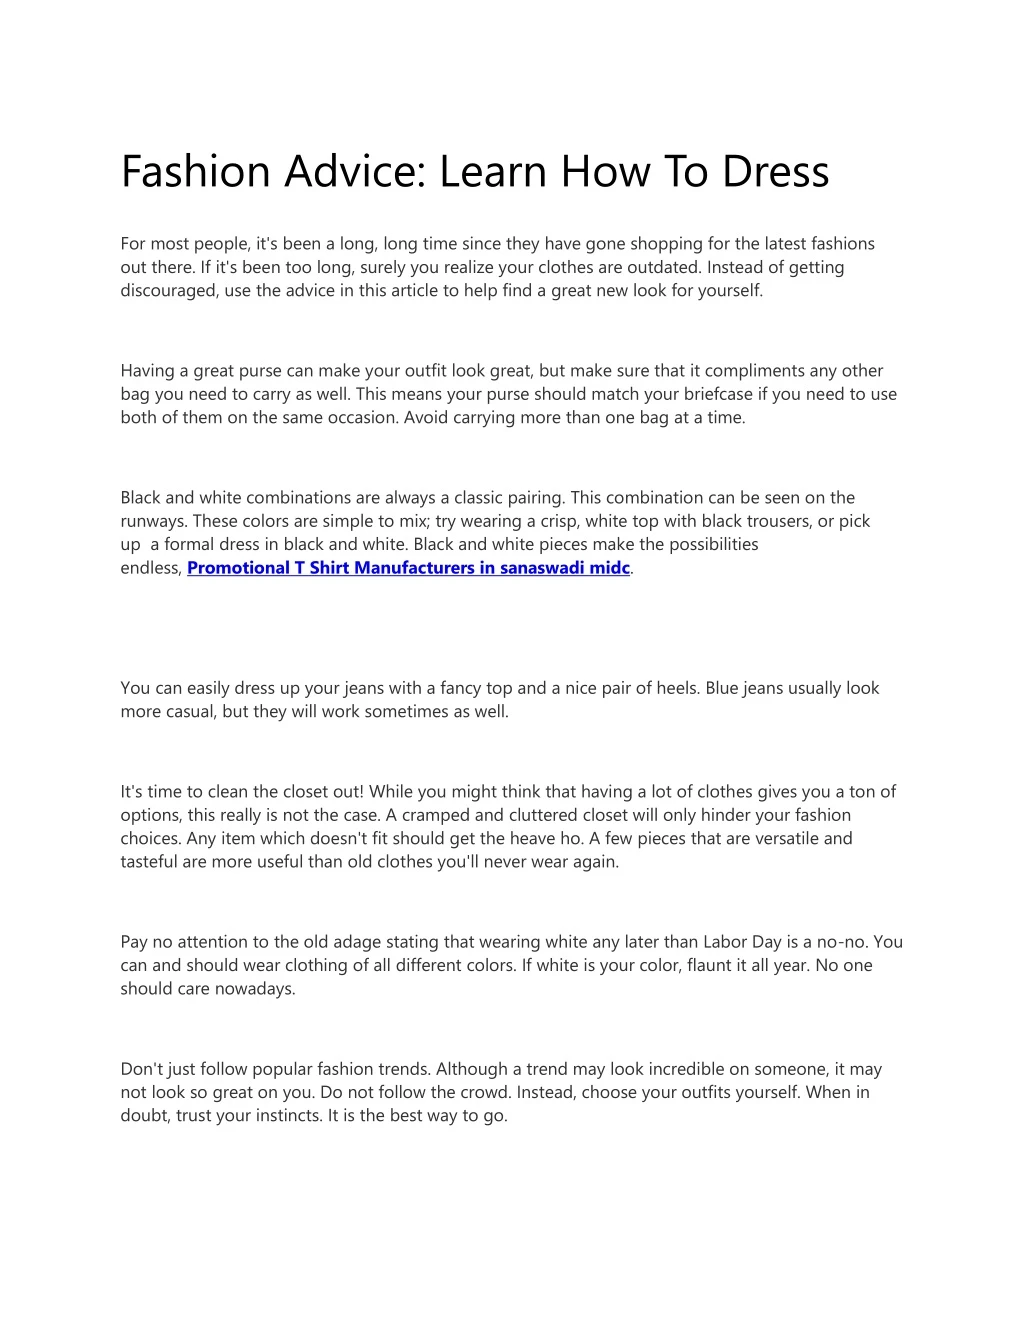 fashion advice learn how to dress